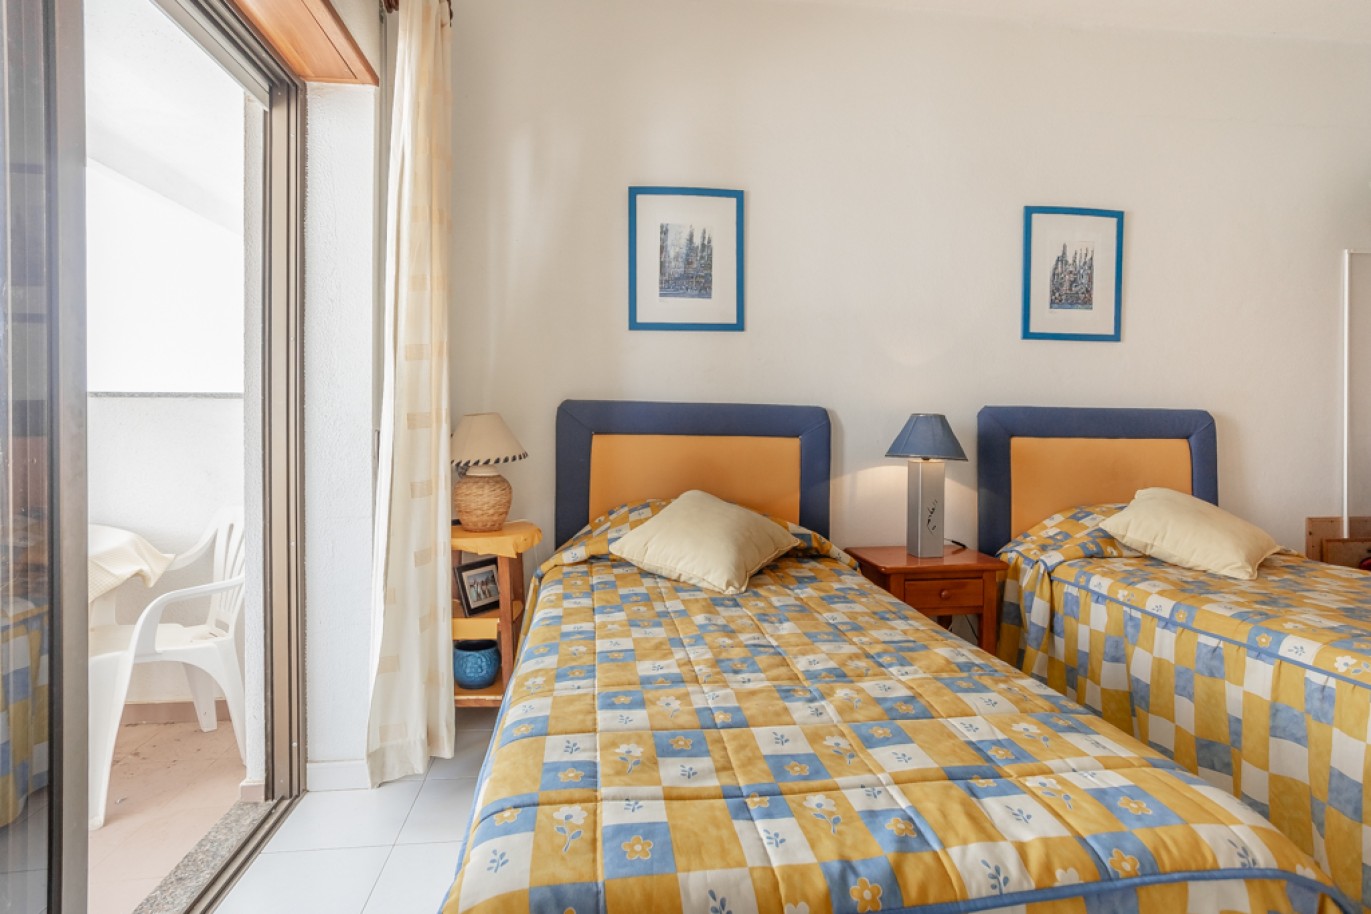 Apartamento com 1+1 quartos, com vista mar, para venda em Porches, Algarve_257031